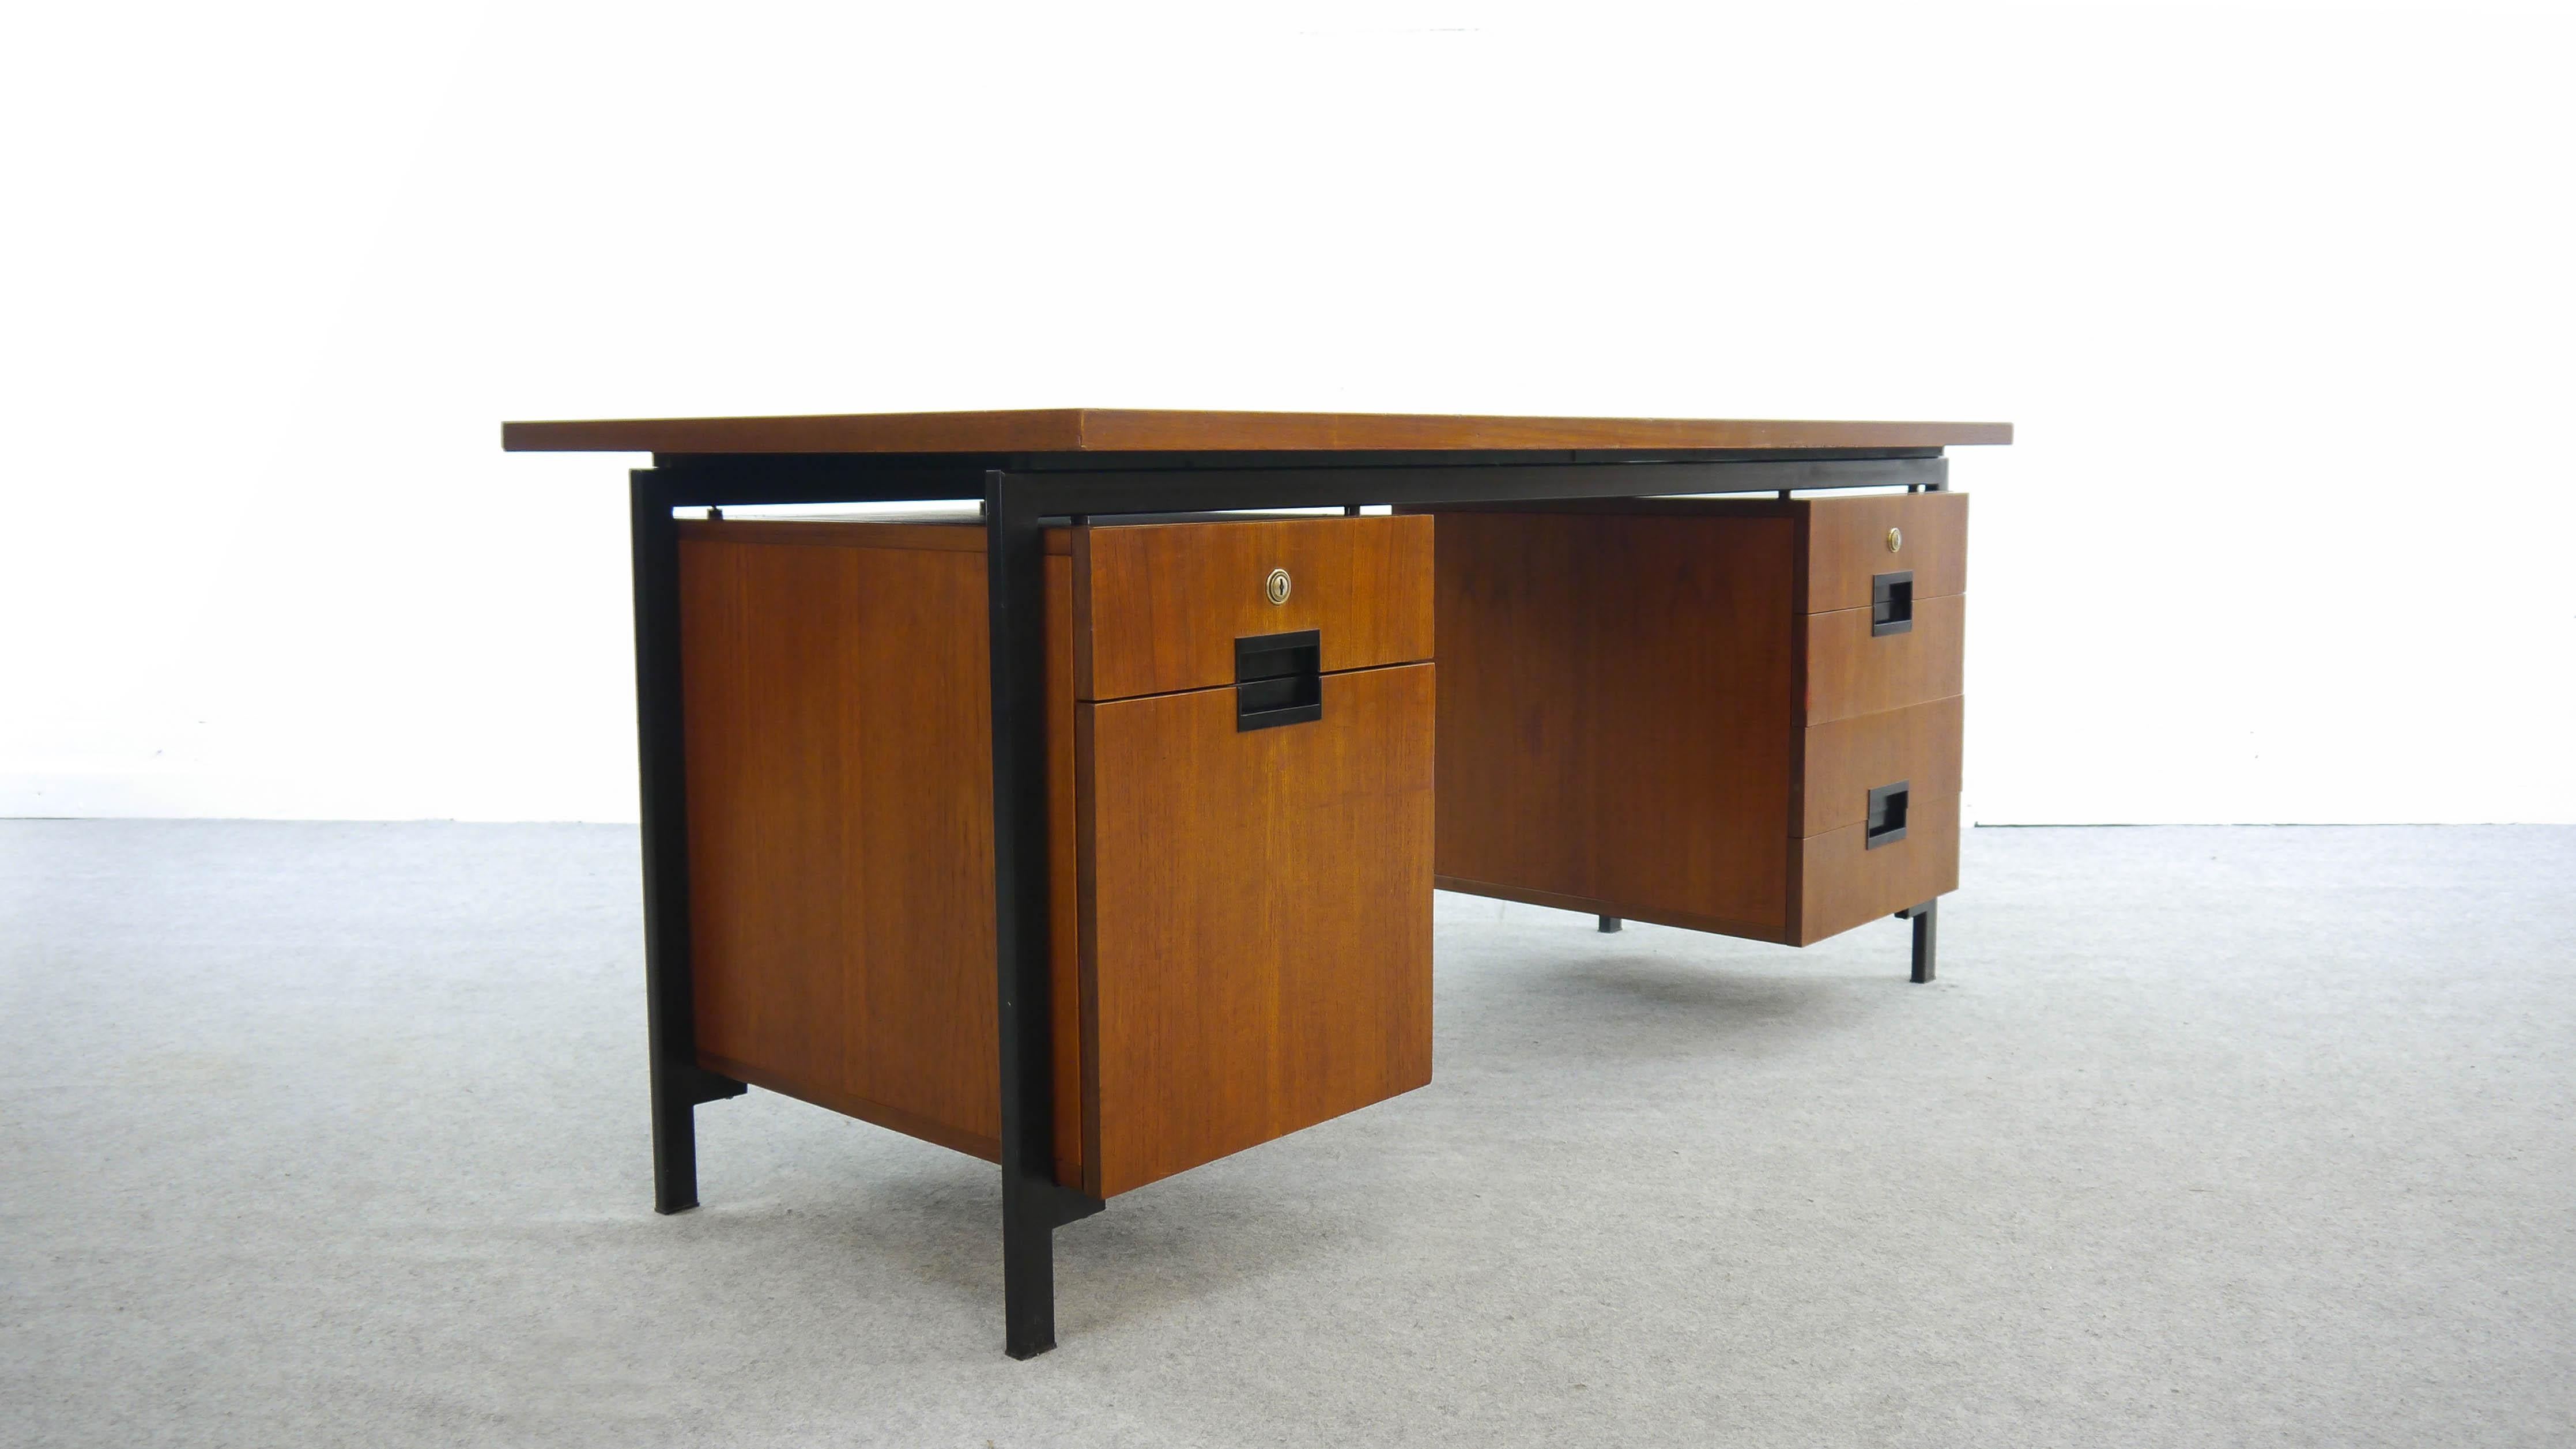 Schreibtisch aus Teakholz aus den 1950er Jahren, entworfen von Cees Braakman, hergestellt von Pastoe, Niederlande.
Gestell aus schwarzem Stahl mit aufgehängten Teakholz-Truhen. 5 Schubladen, 1 Schublade für Hängemappen.